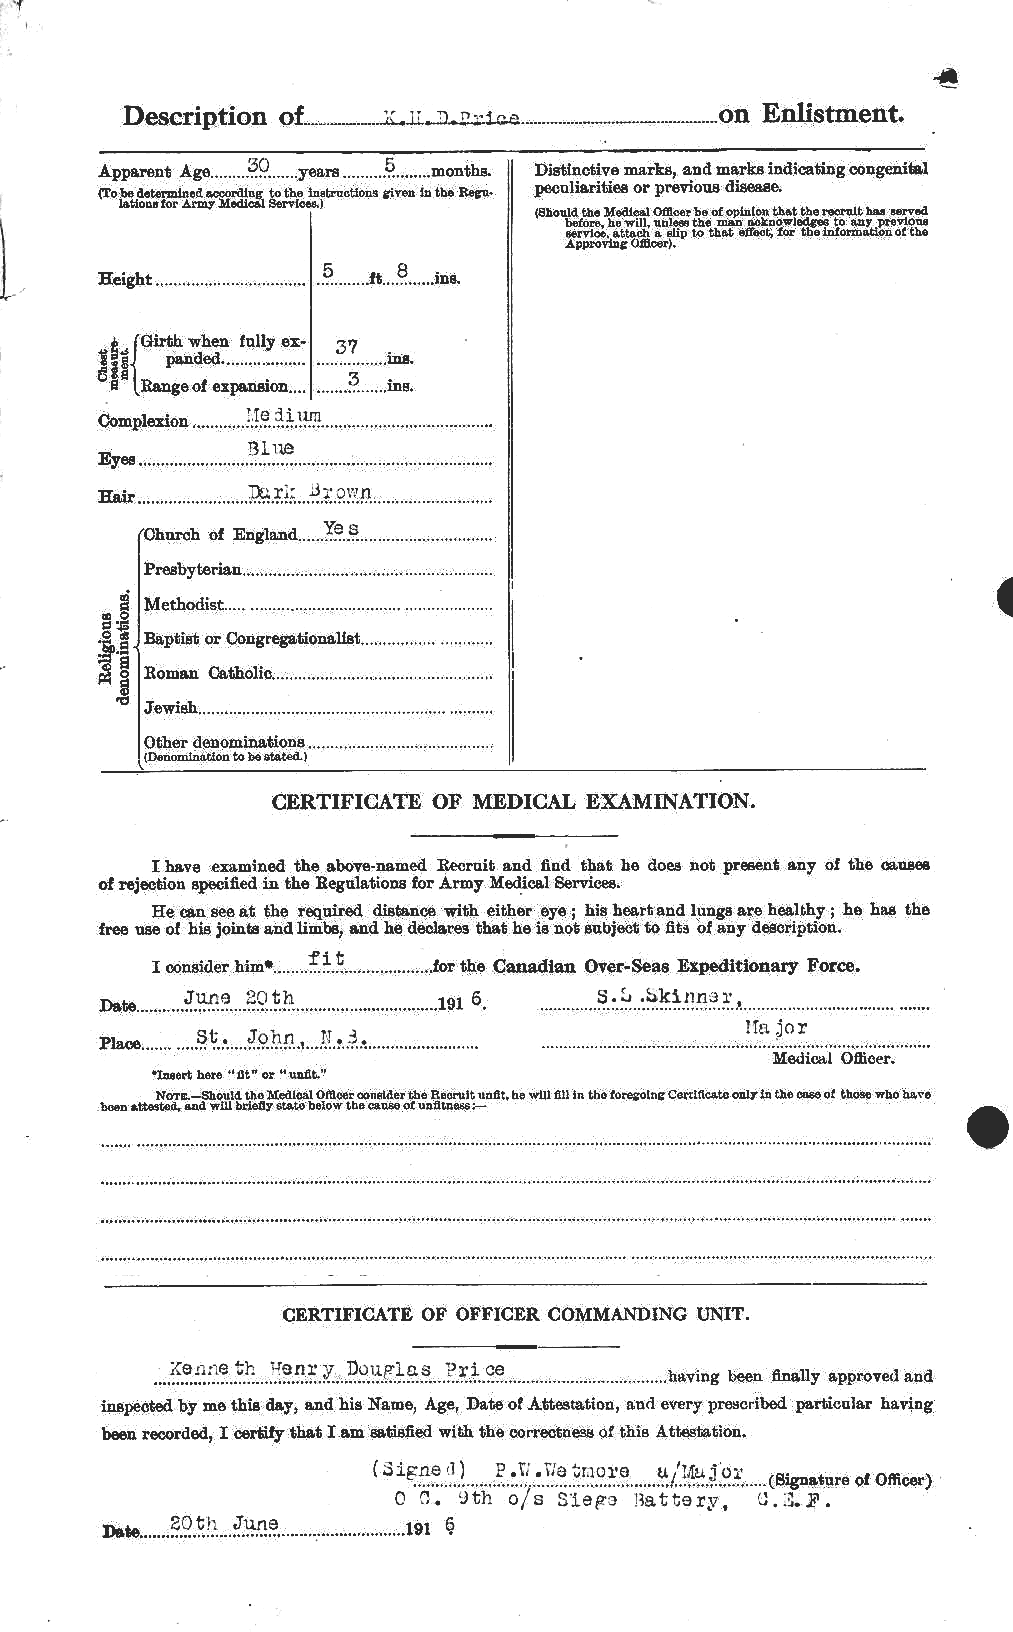 Dossiers du Personnel de la Première Guerre mondiale - CEC 587271b